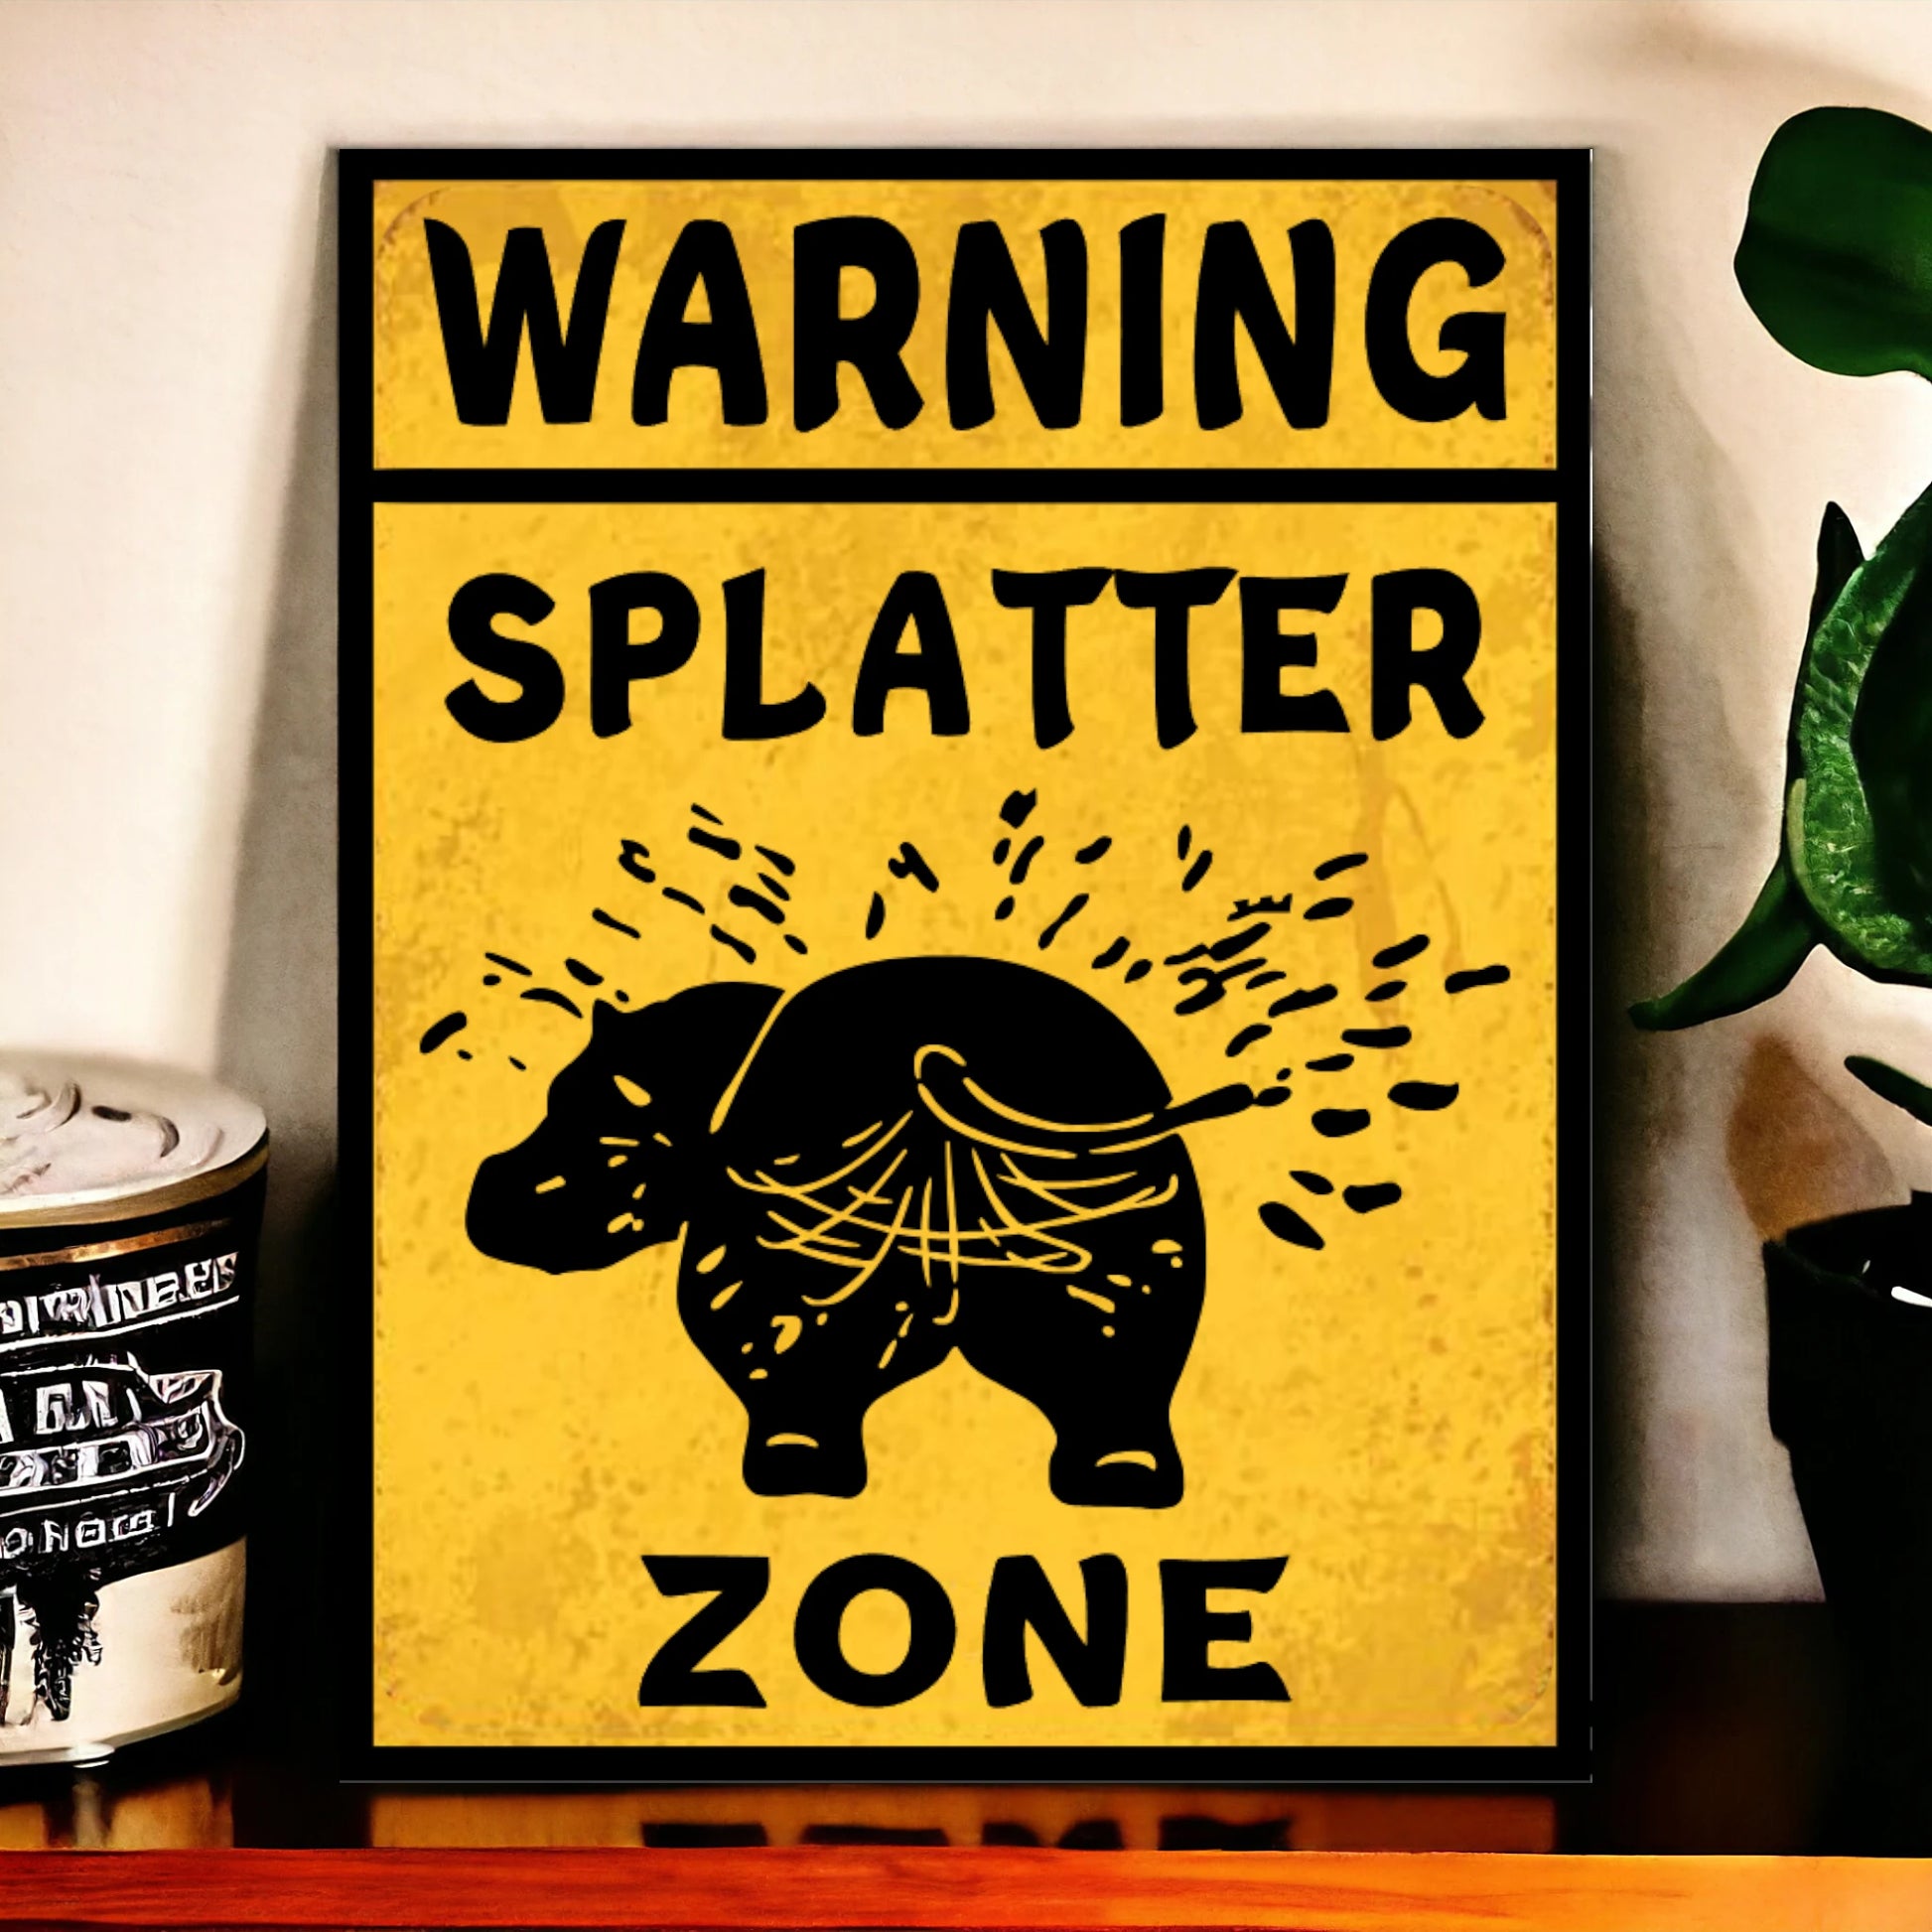 splatter zone sign 